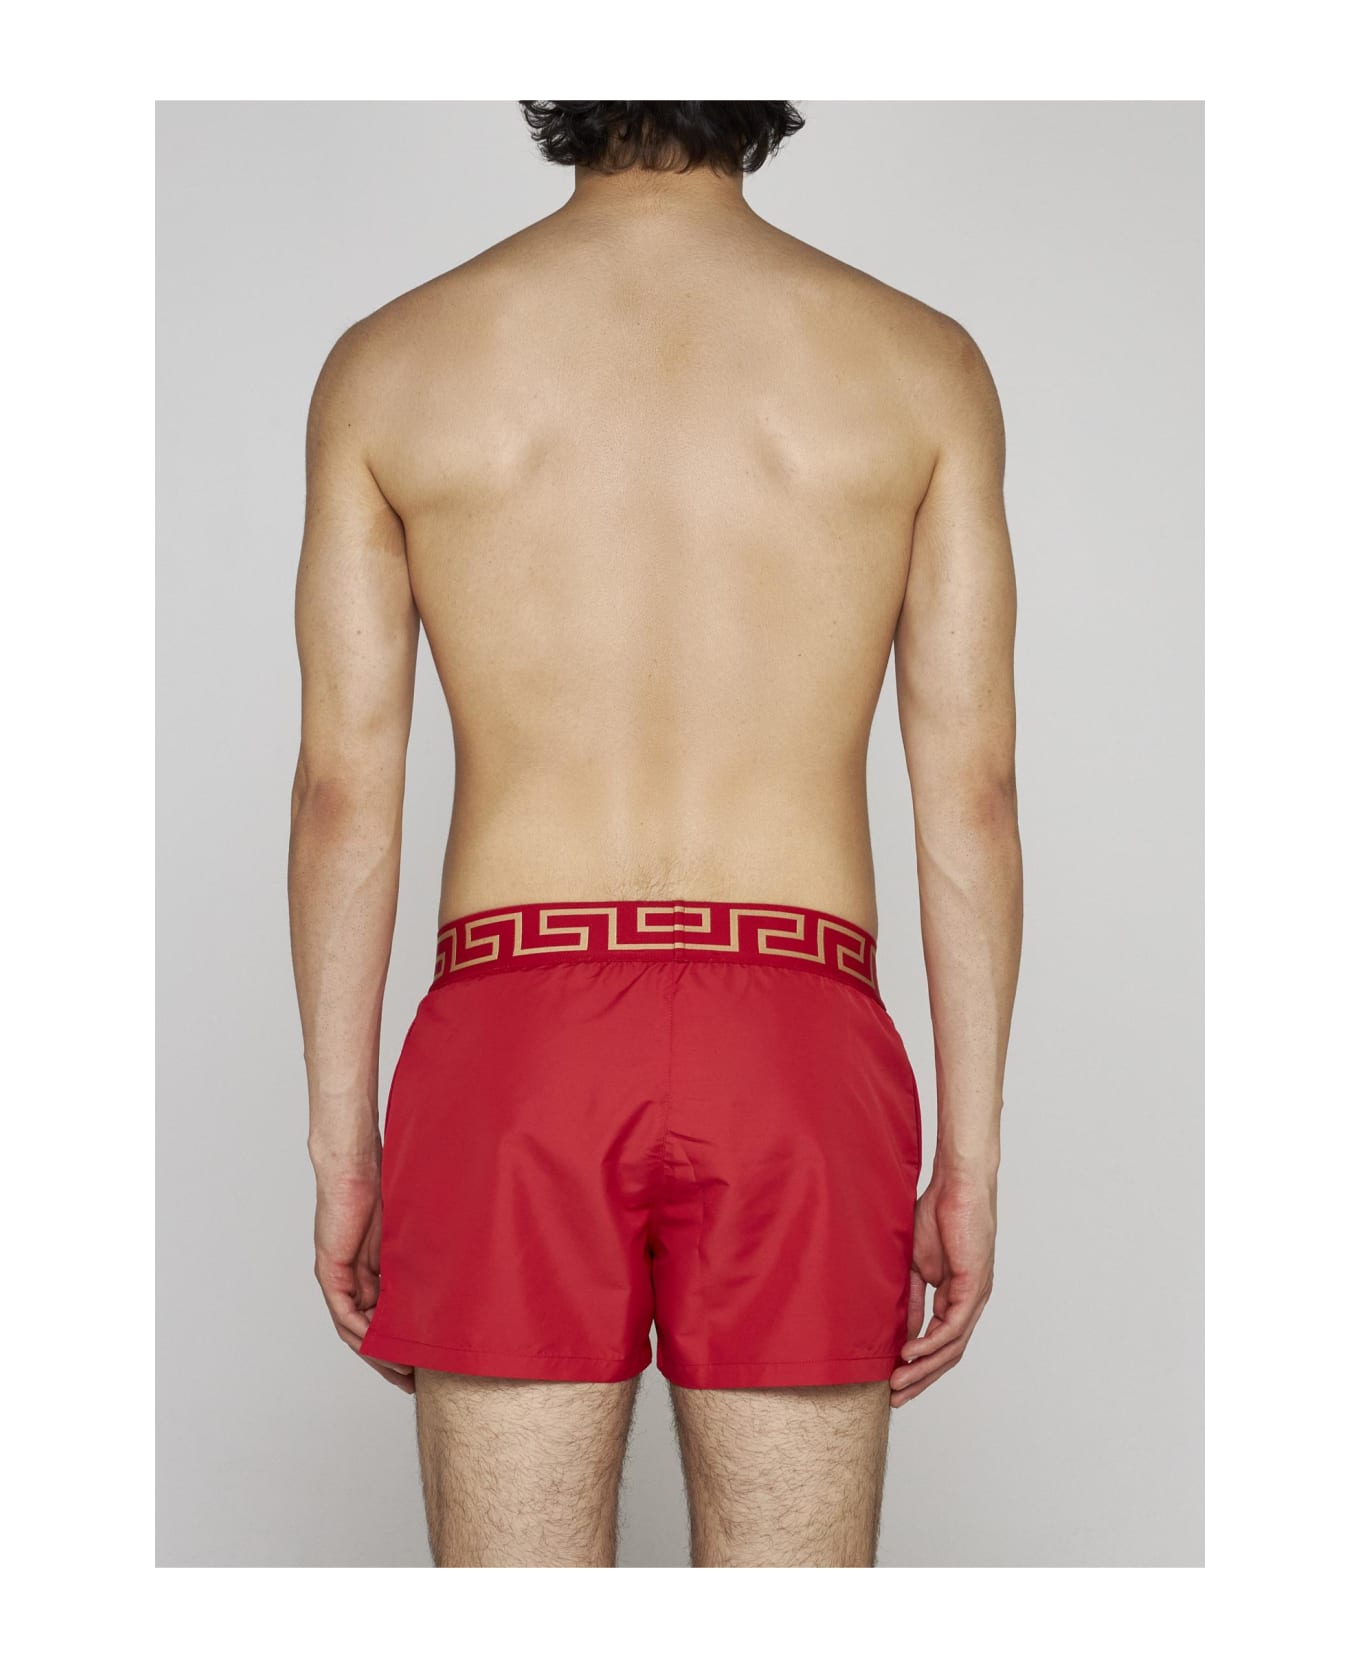 Versace Swim Shorts - RED